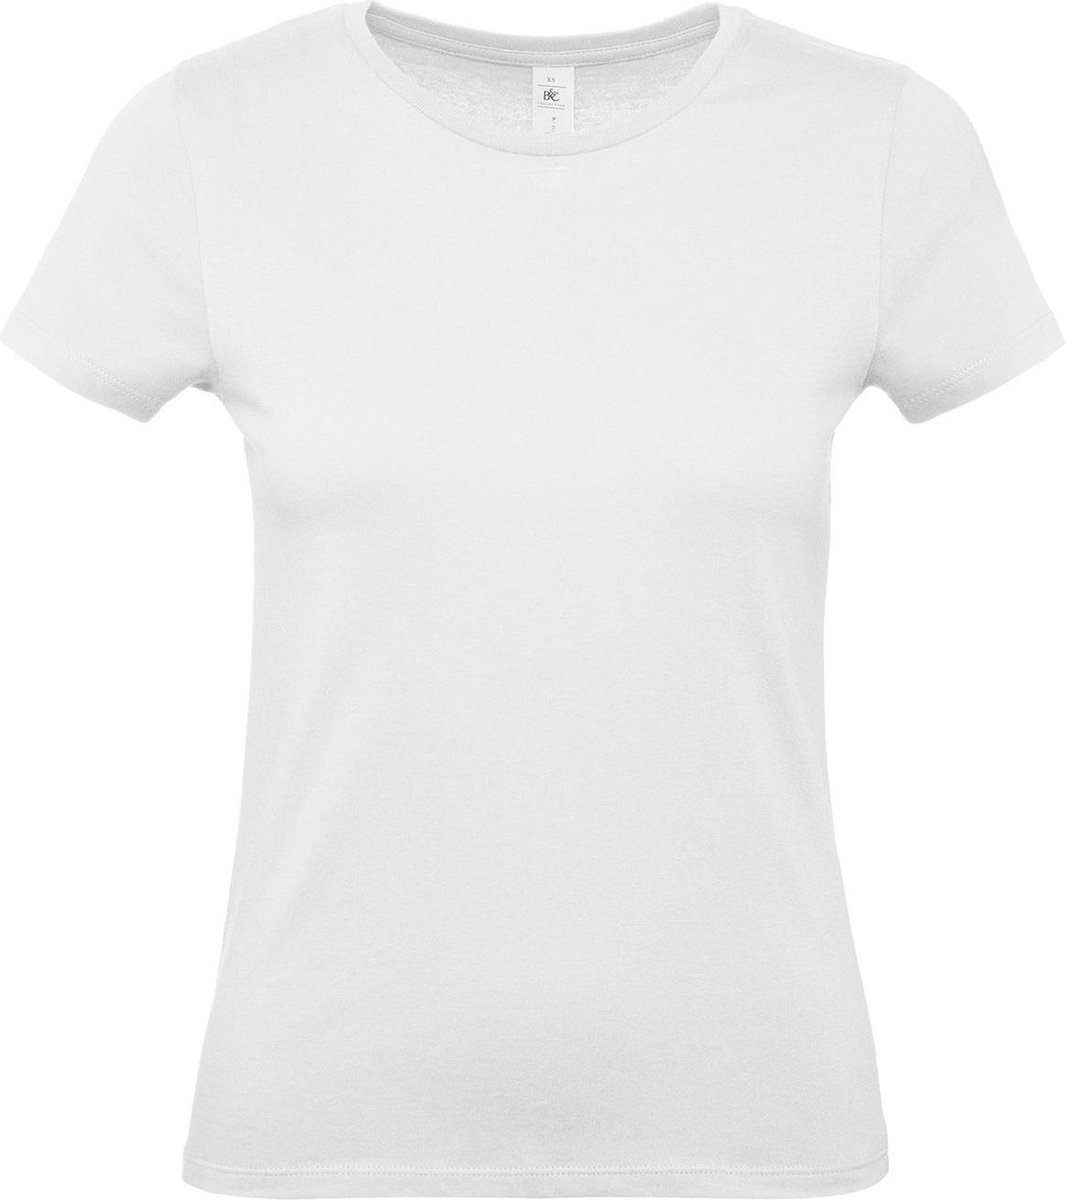 Set van 2x stuks wit basic t-shirts voor dames met ronde hals - katoen - 145 grams - witte shirts / kleding, maat: M (38)